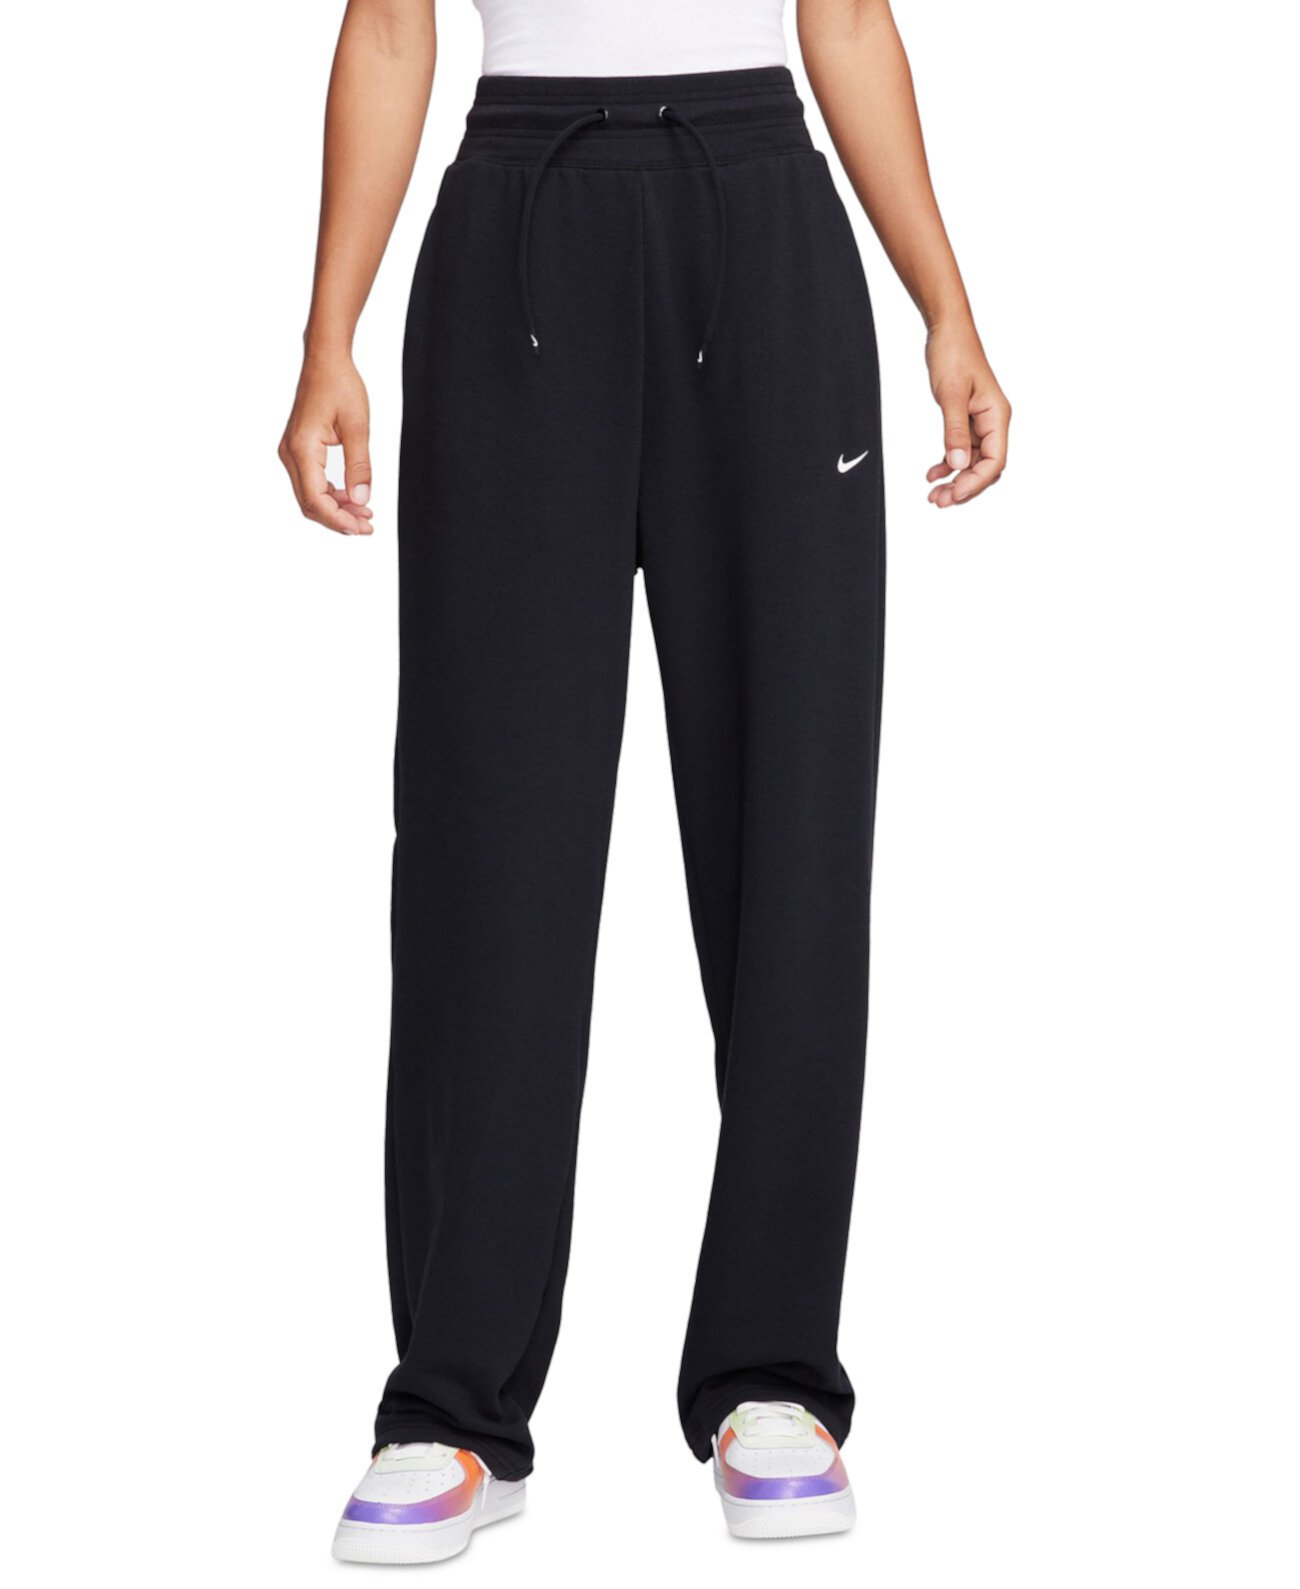 Женские спортивные штаны Dri-FIT One с открытой кромкой и высокой талией из французского терри Nike